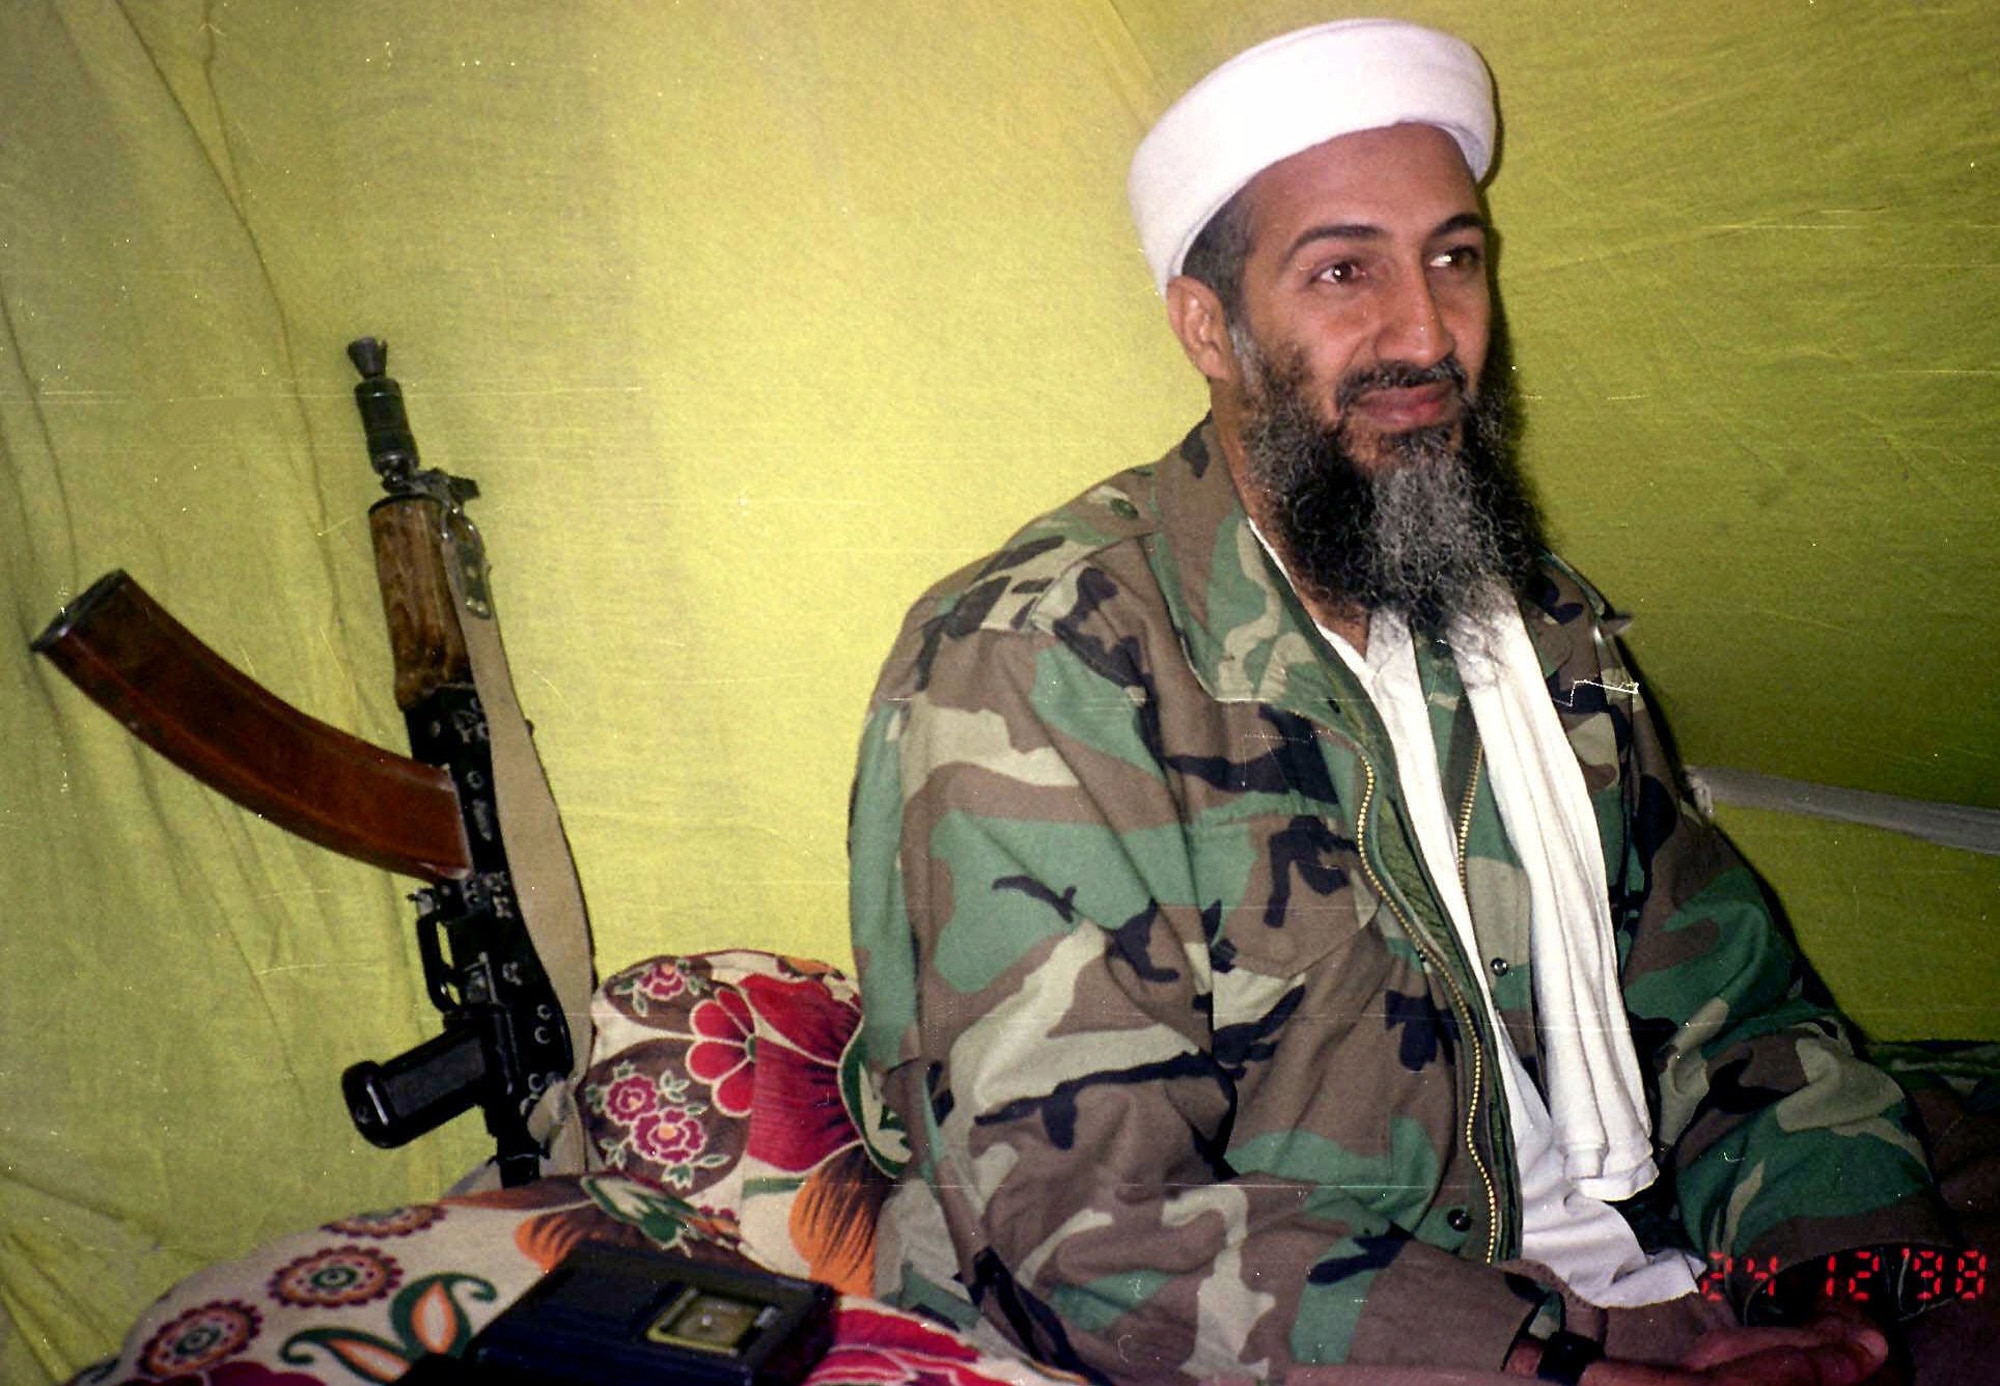 Osama Bin Laden in Afghanistan in 1998.